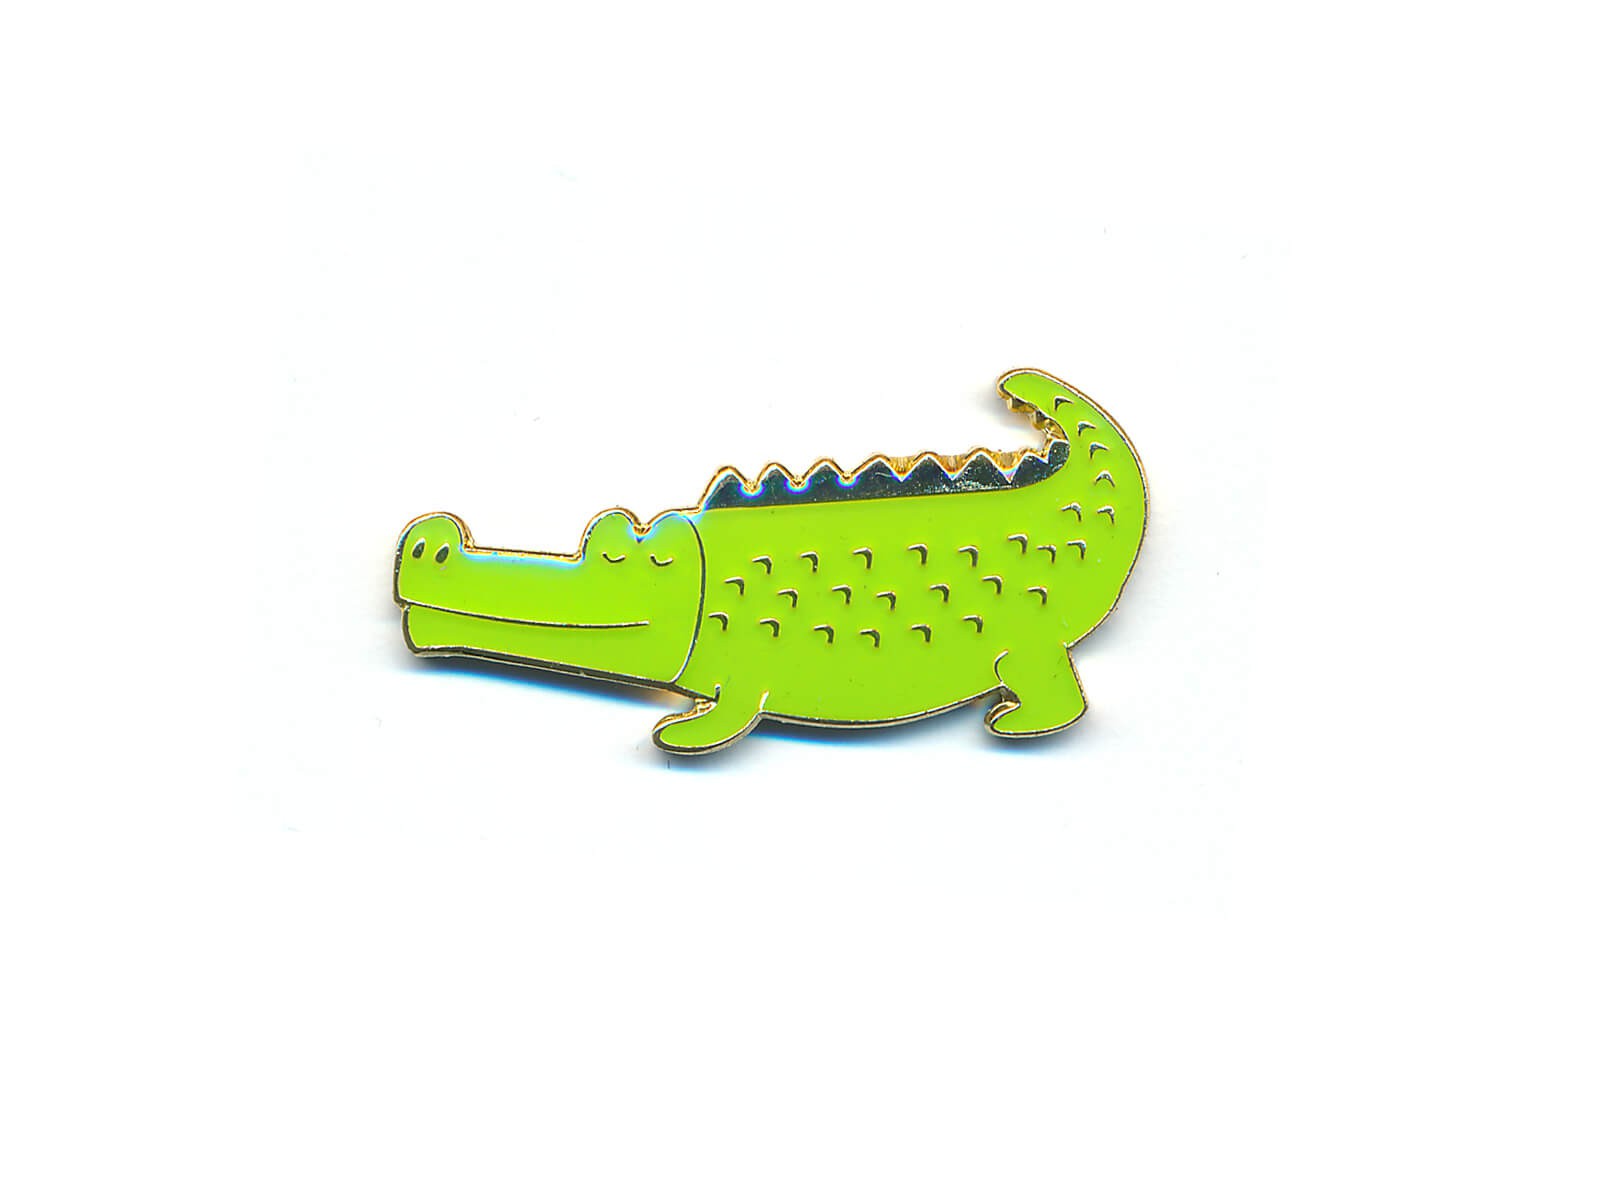 Pin Krokodil